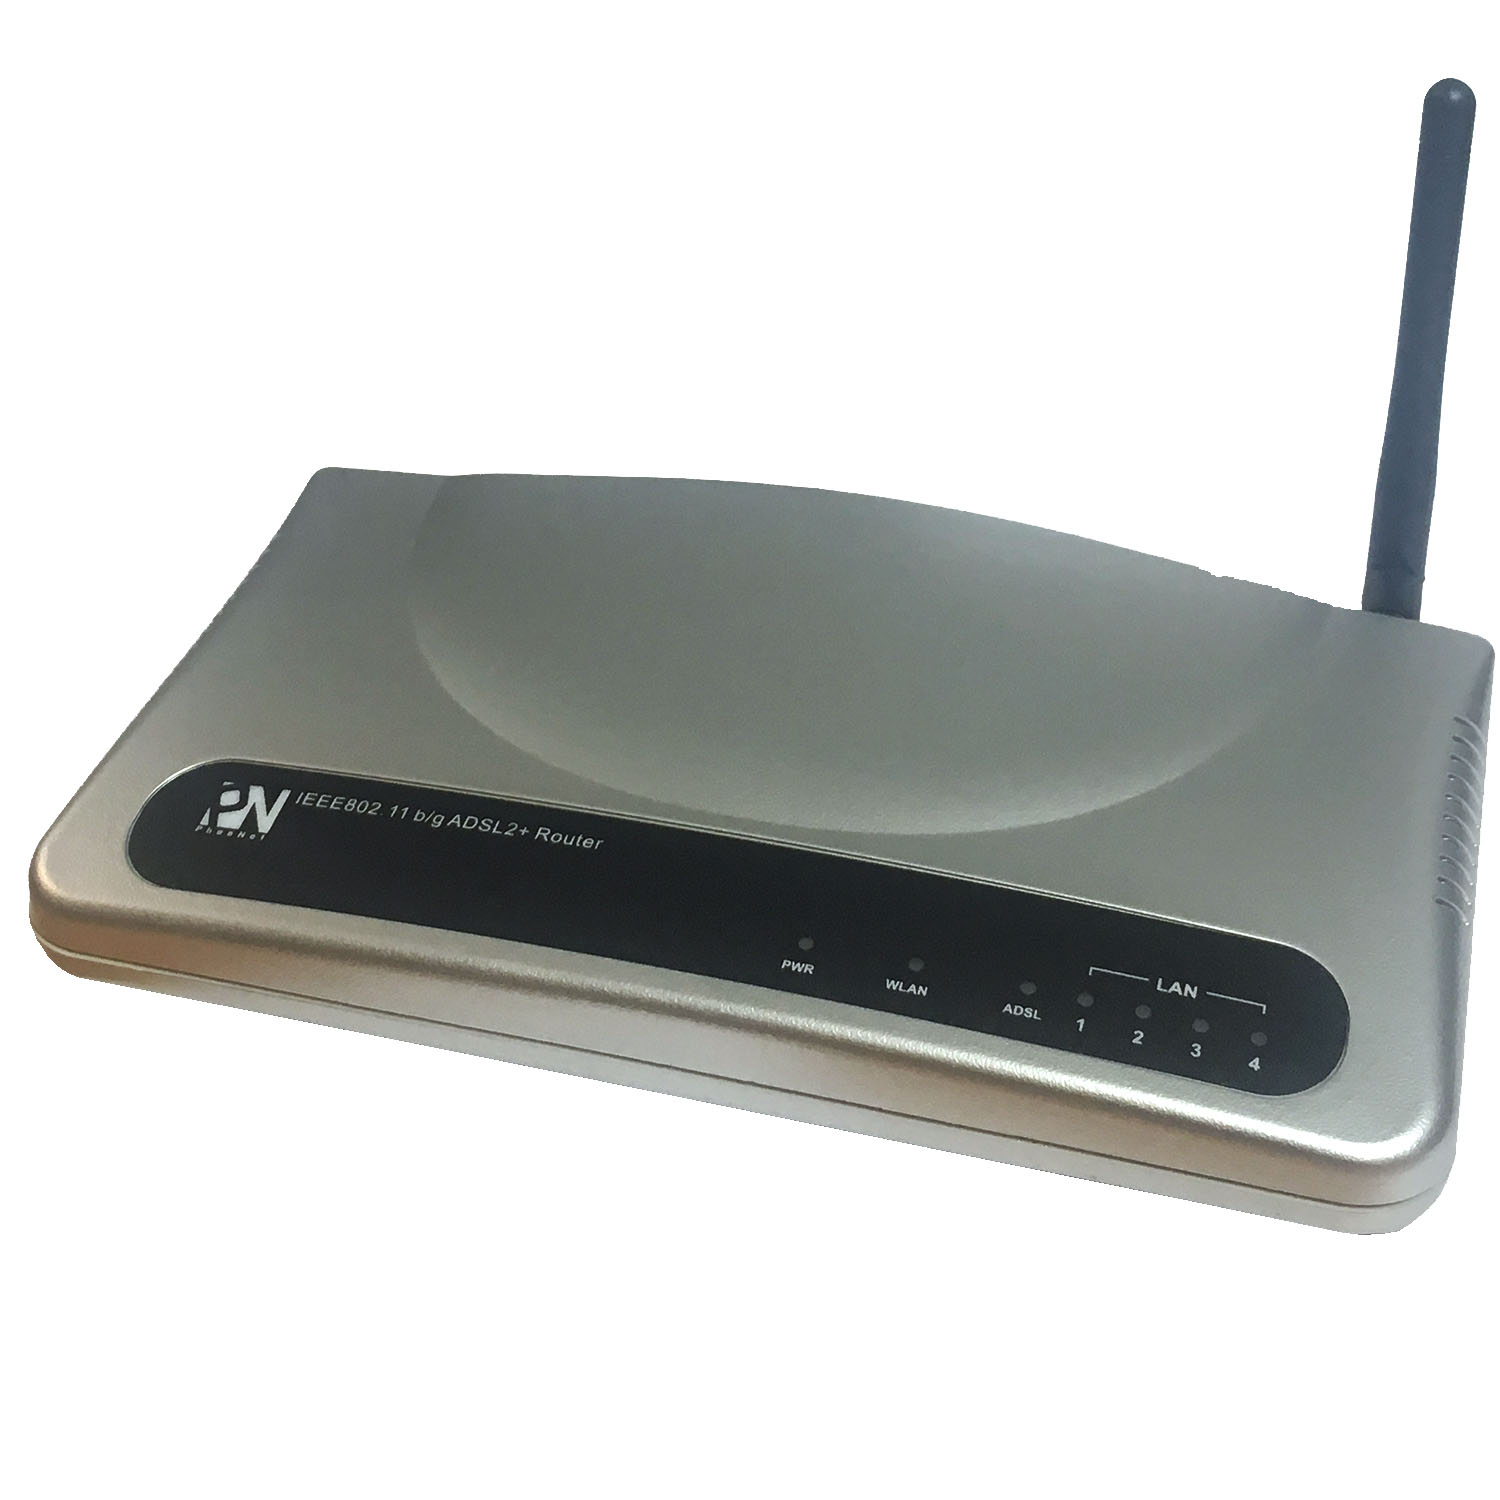 مودم روتر ADSL2 Plus بی سیم فی نت مدل WBIG-634TRA